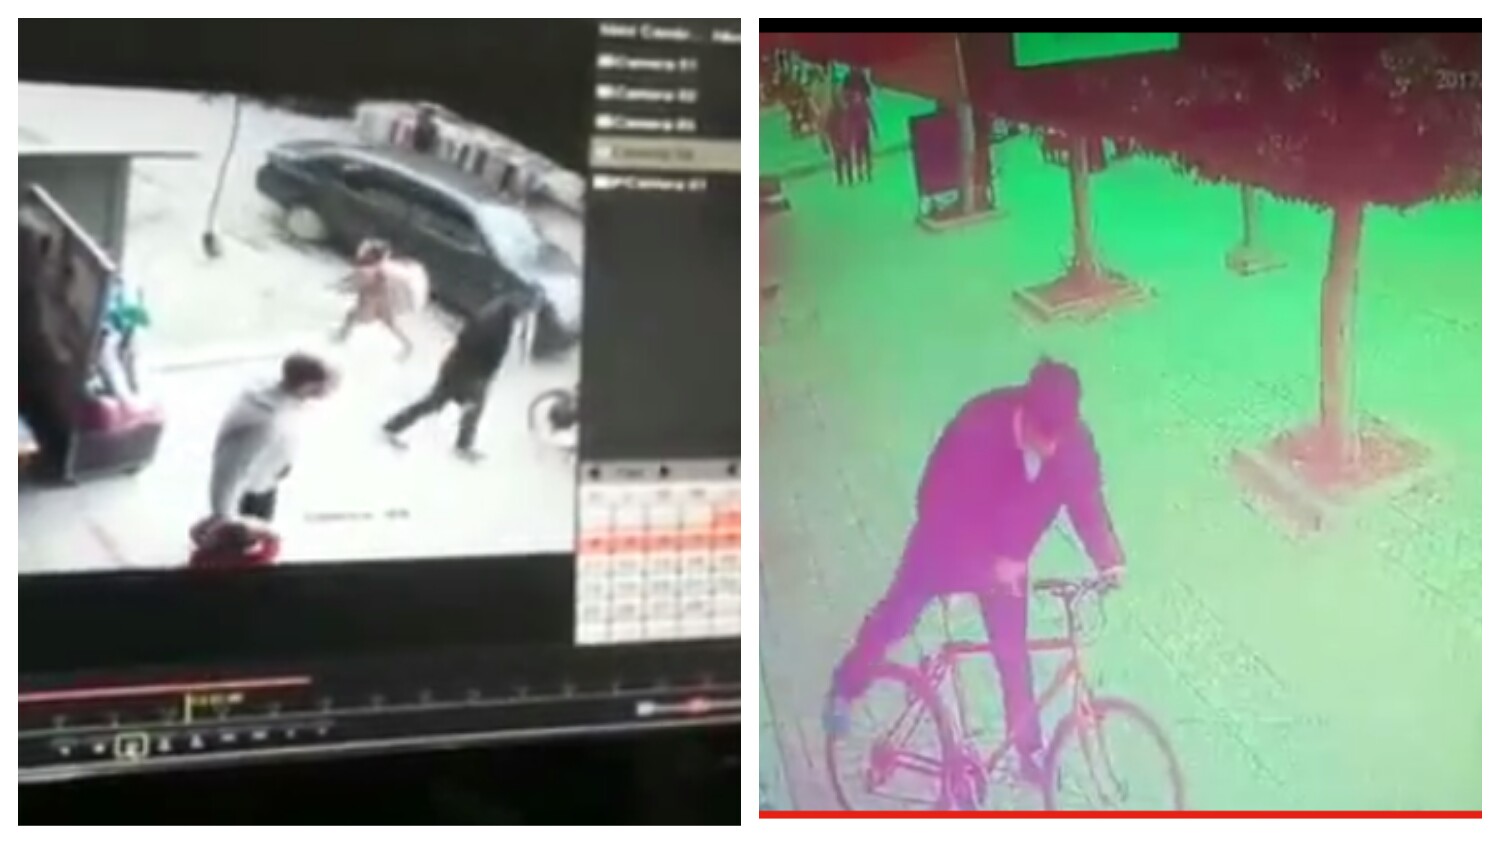 هذا راه جن! وبالفيديو… “الشفار مول نظاظر” يرعب أصحاب الدراجات الهوائية ببني ملال ويظهر للمرة الثانية في فيديو وهو يسرق دراجة 